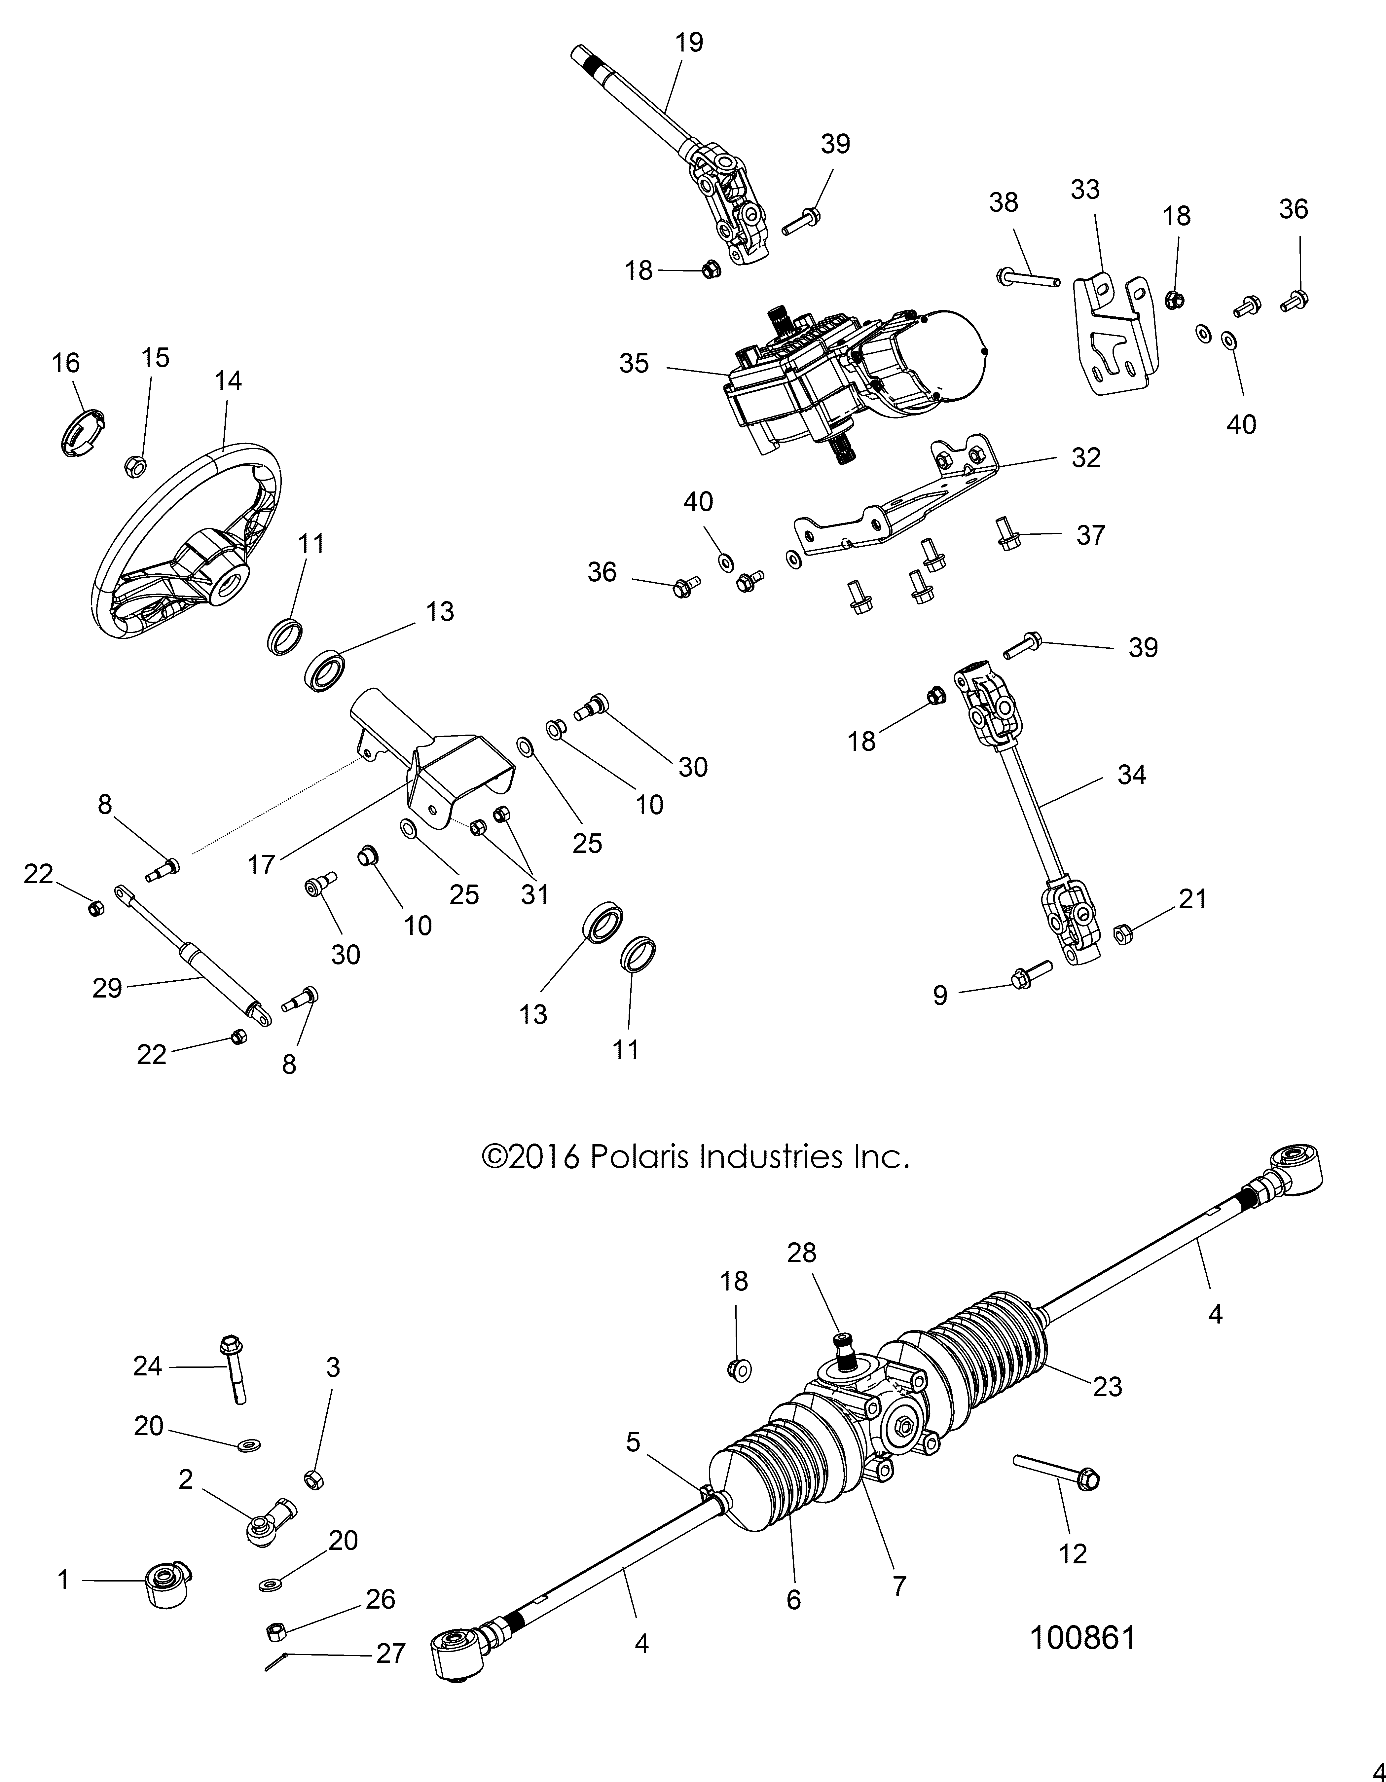 Foto diagrama Polaris que contem a peça 1824014